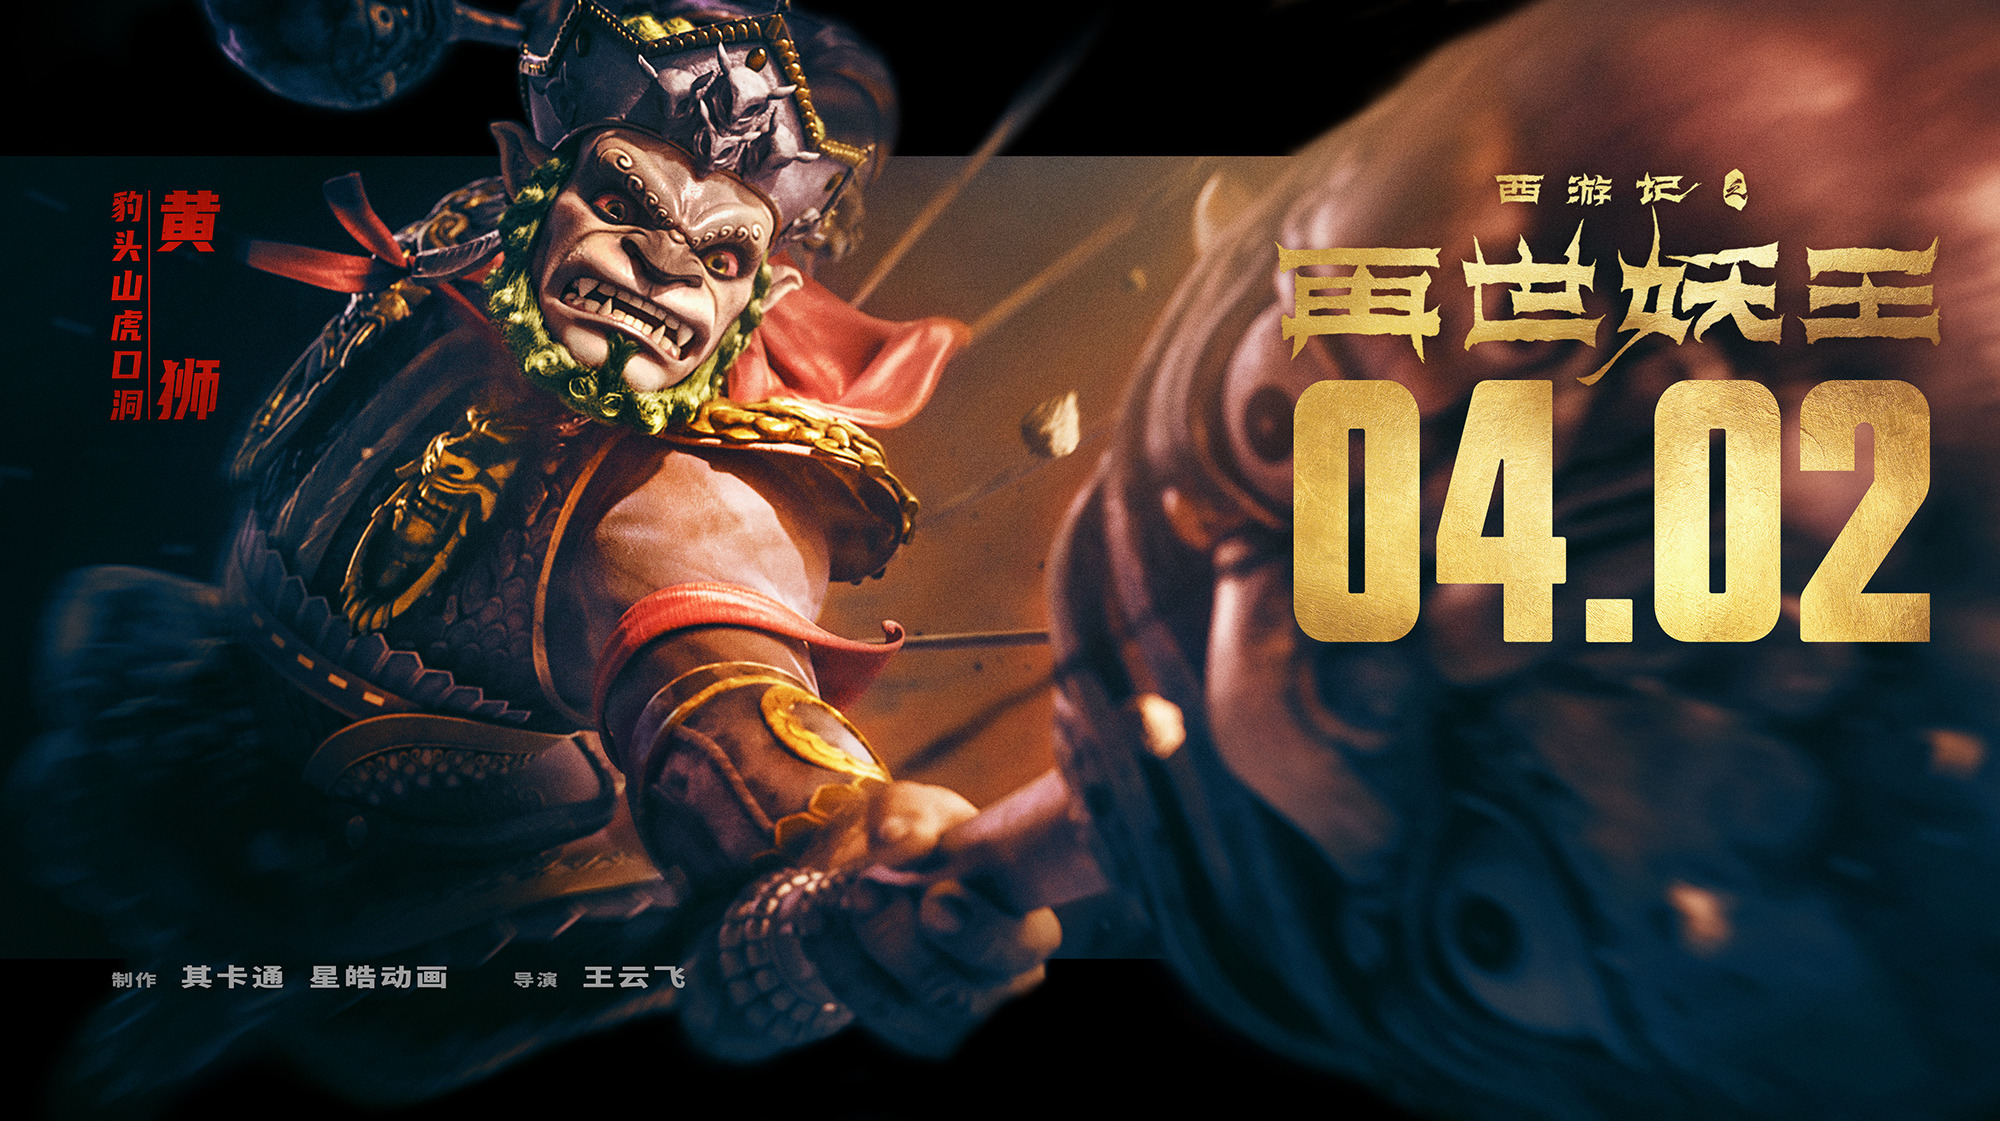 Mega Sized Movie Poster Image for Xi You Ji Zhi Zai Shi Yao Wang (#11 of 21)